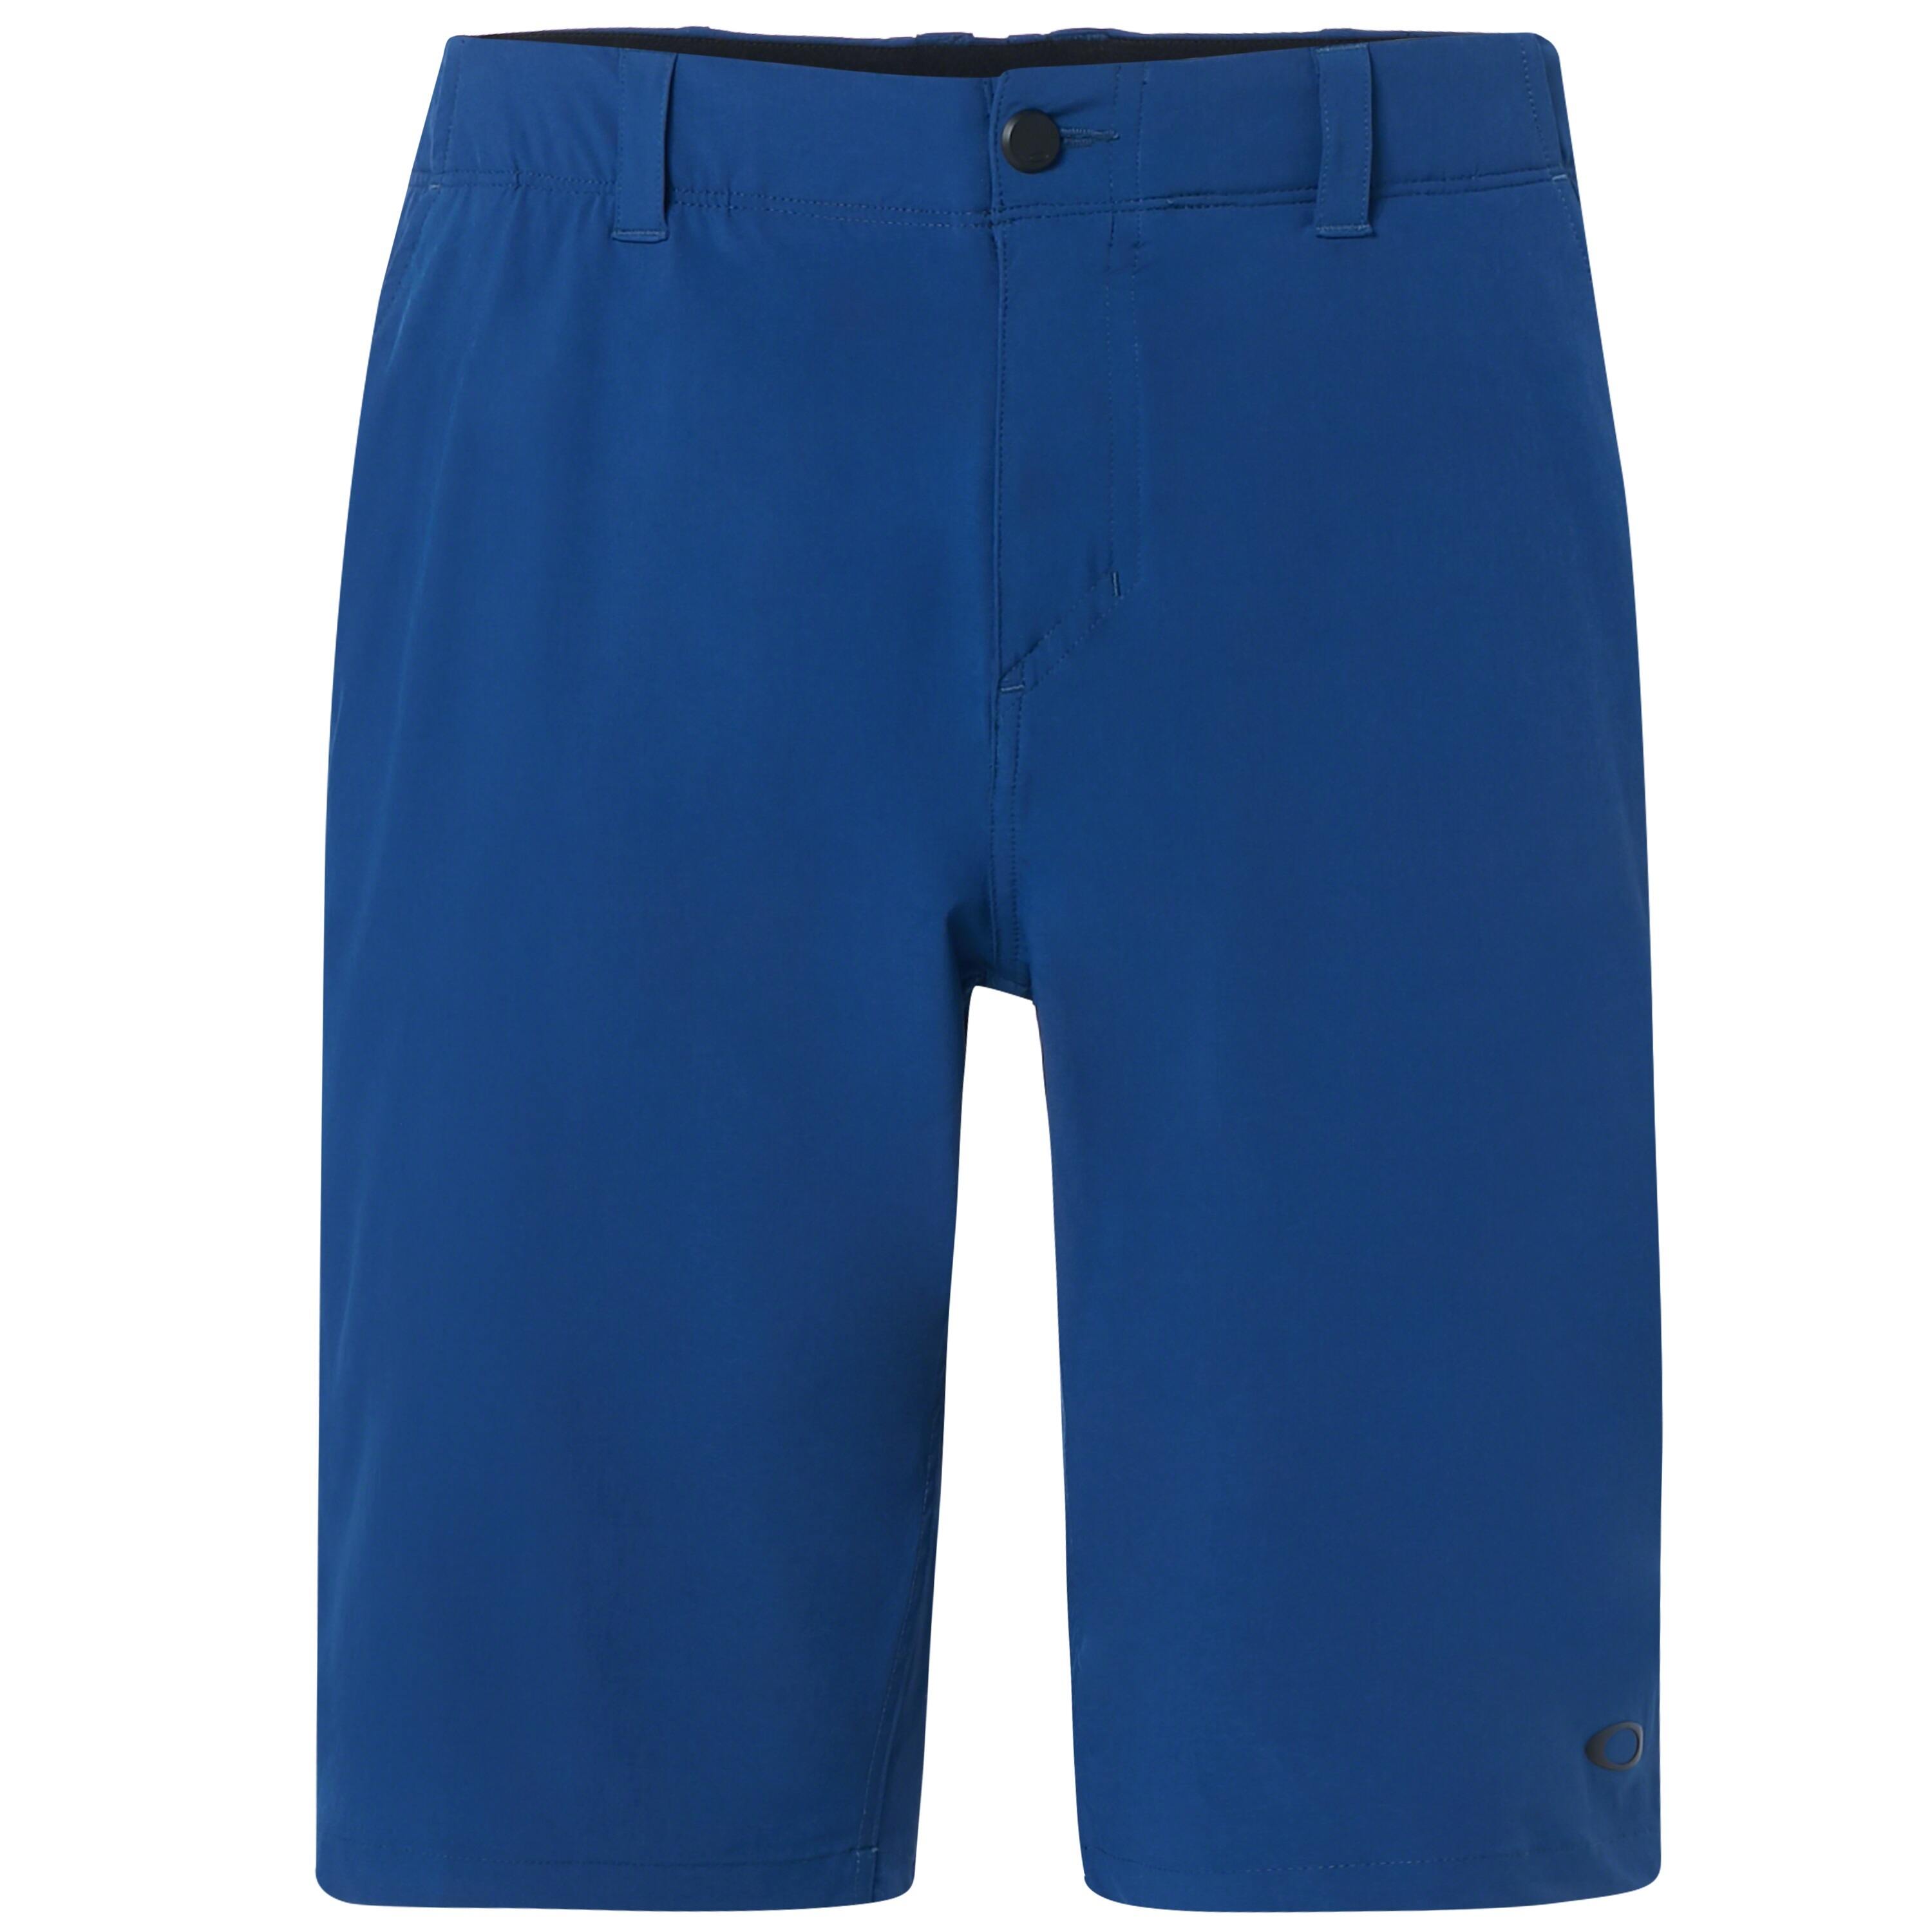 oakley golf shorts clearance